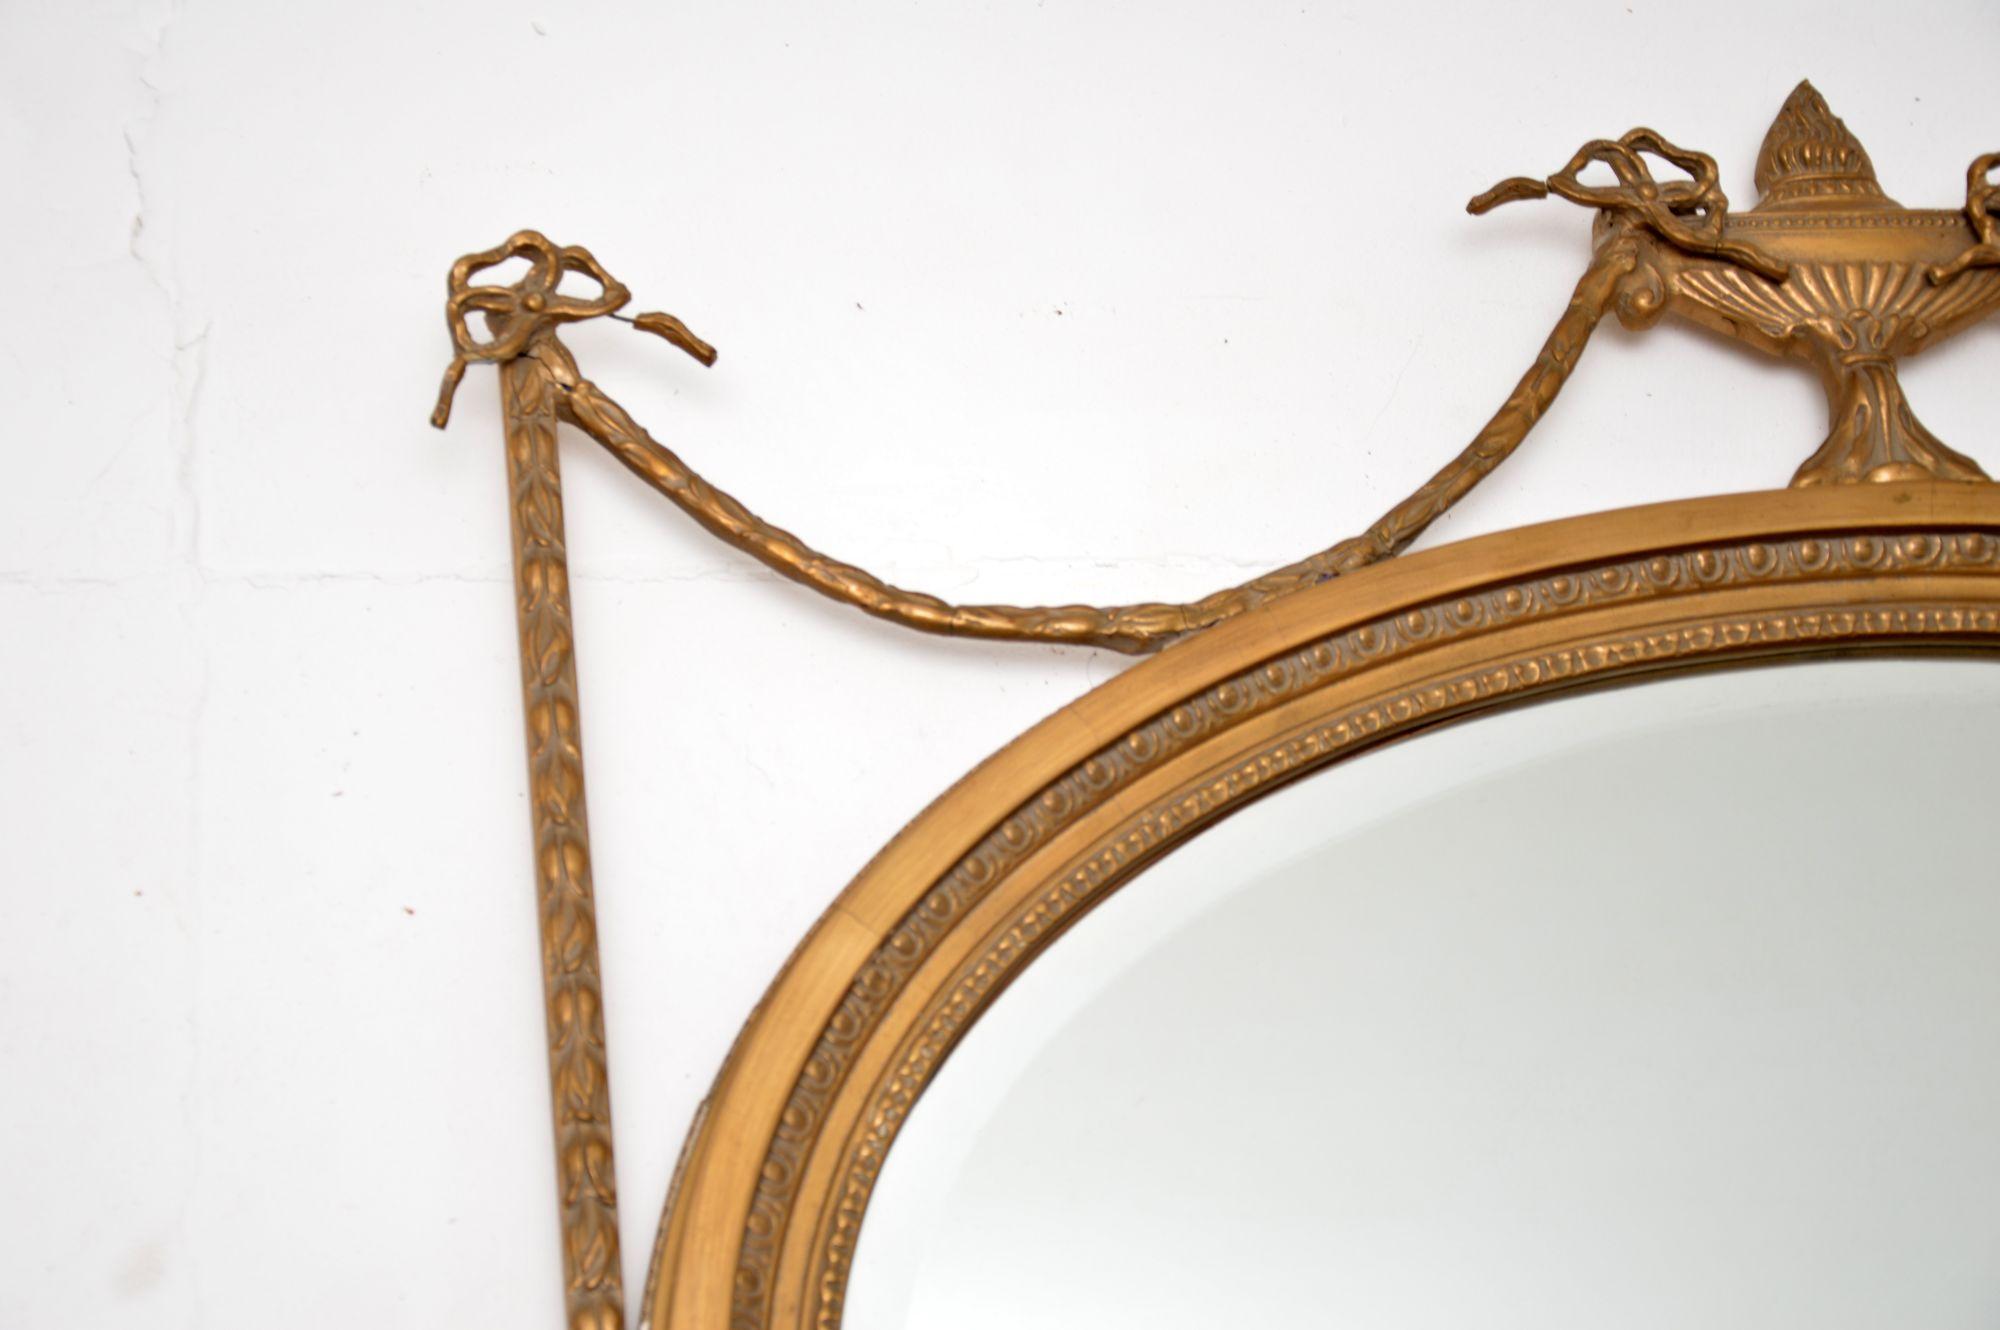 Magnifique miroir ancien de style Adams en bois doré et gesso, de très grande qualité. Fabriqué en Angleterre, il date de la période 1890-1910.

Ce produit est très bien fait et son design est magnifique. Le cadre principal est en bois massif doré,